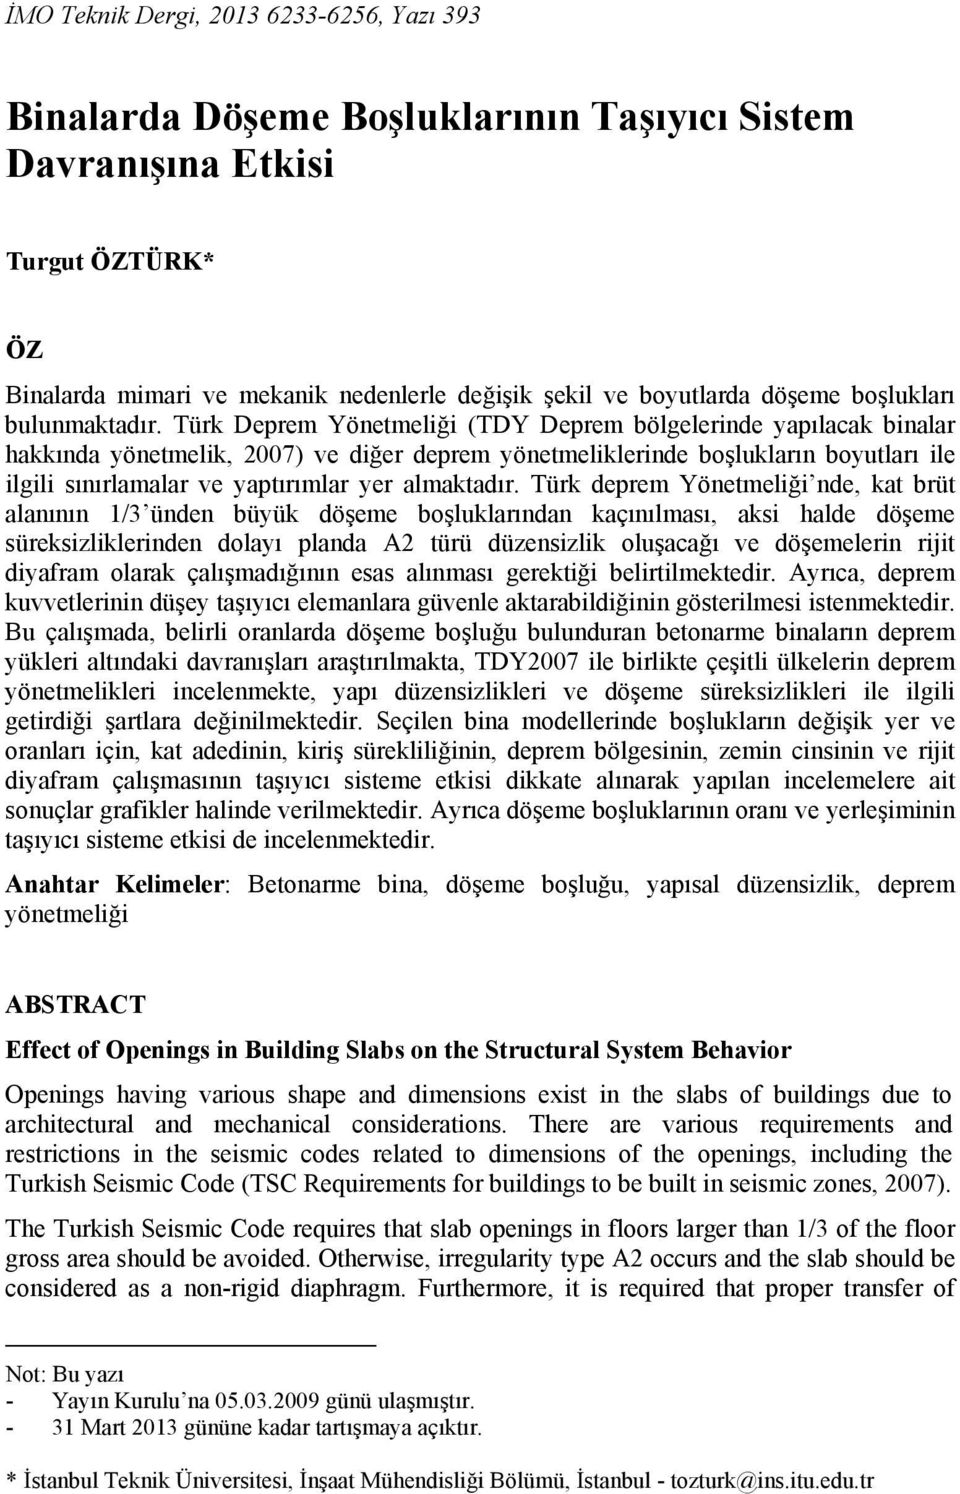 Türk Deprem Yönetmeliği (TDY Deprem bölgelerinde yapılacak binalar hakkında yönetmelik, ) ve diğer deprem yönetmeliklerinde boşlukların boyutları ile ilgili sınırlamalar ve yaptırımlar yer almaktadır.